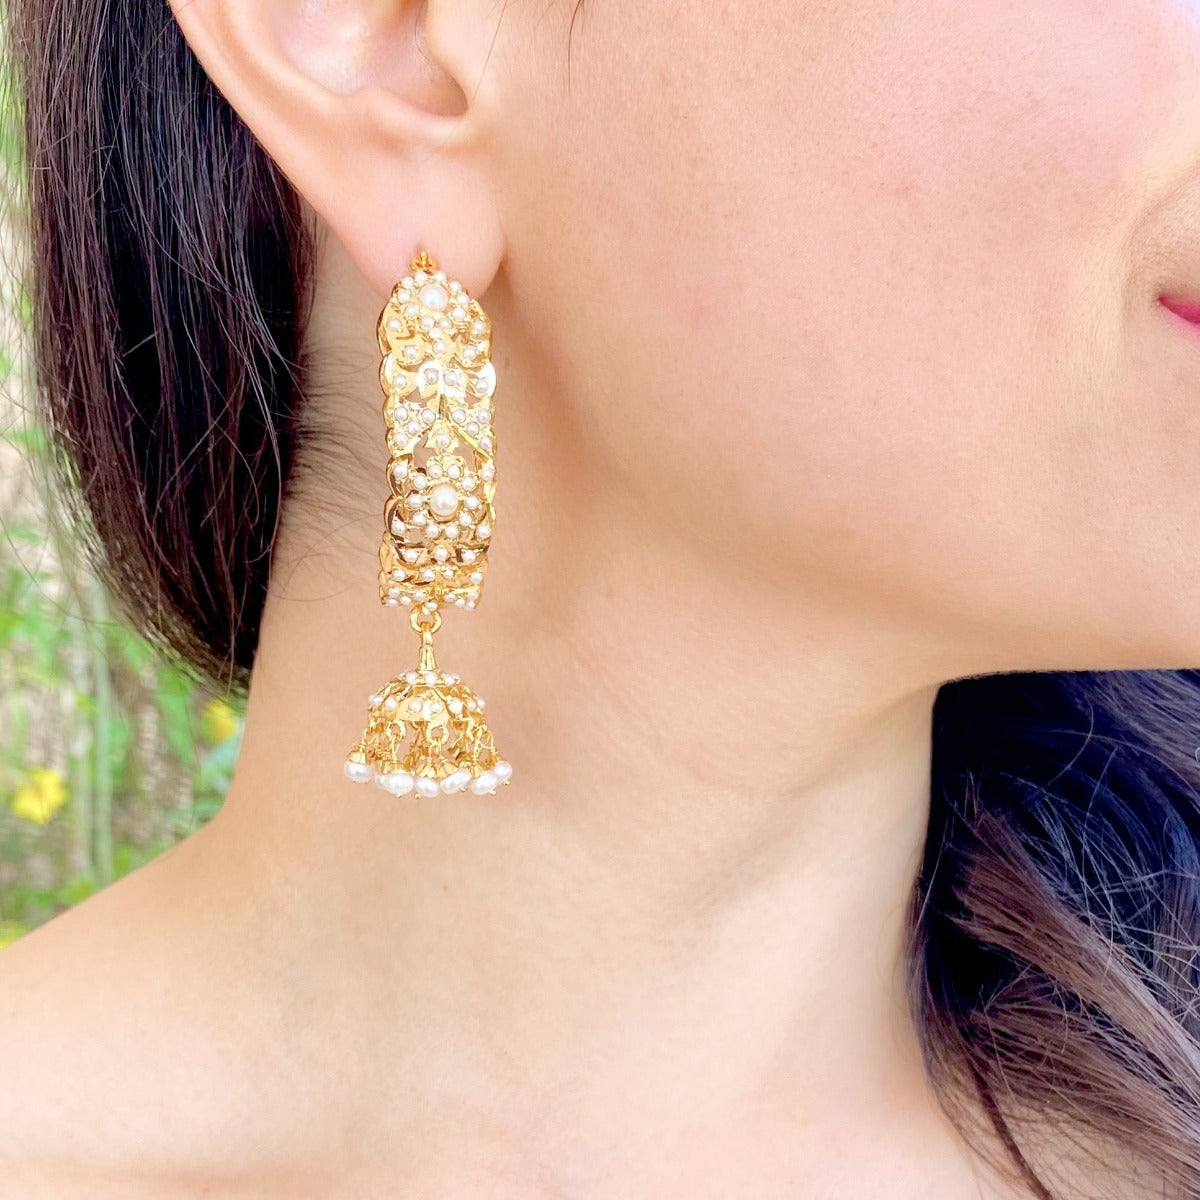 hoop earrings in pearls with gold plating